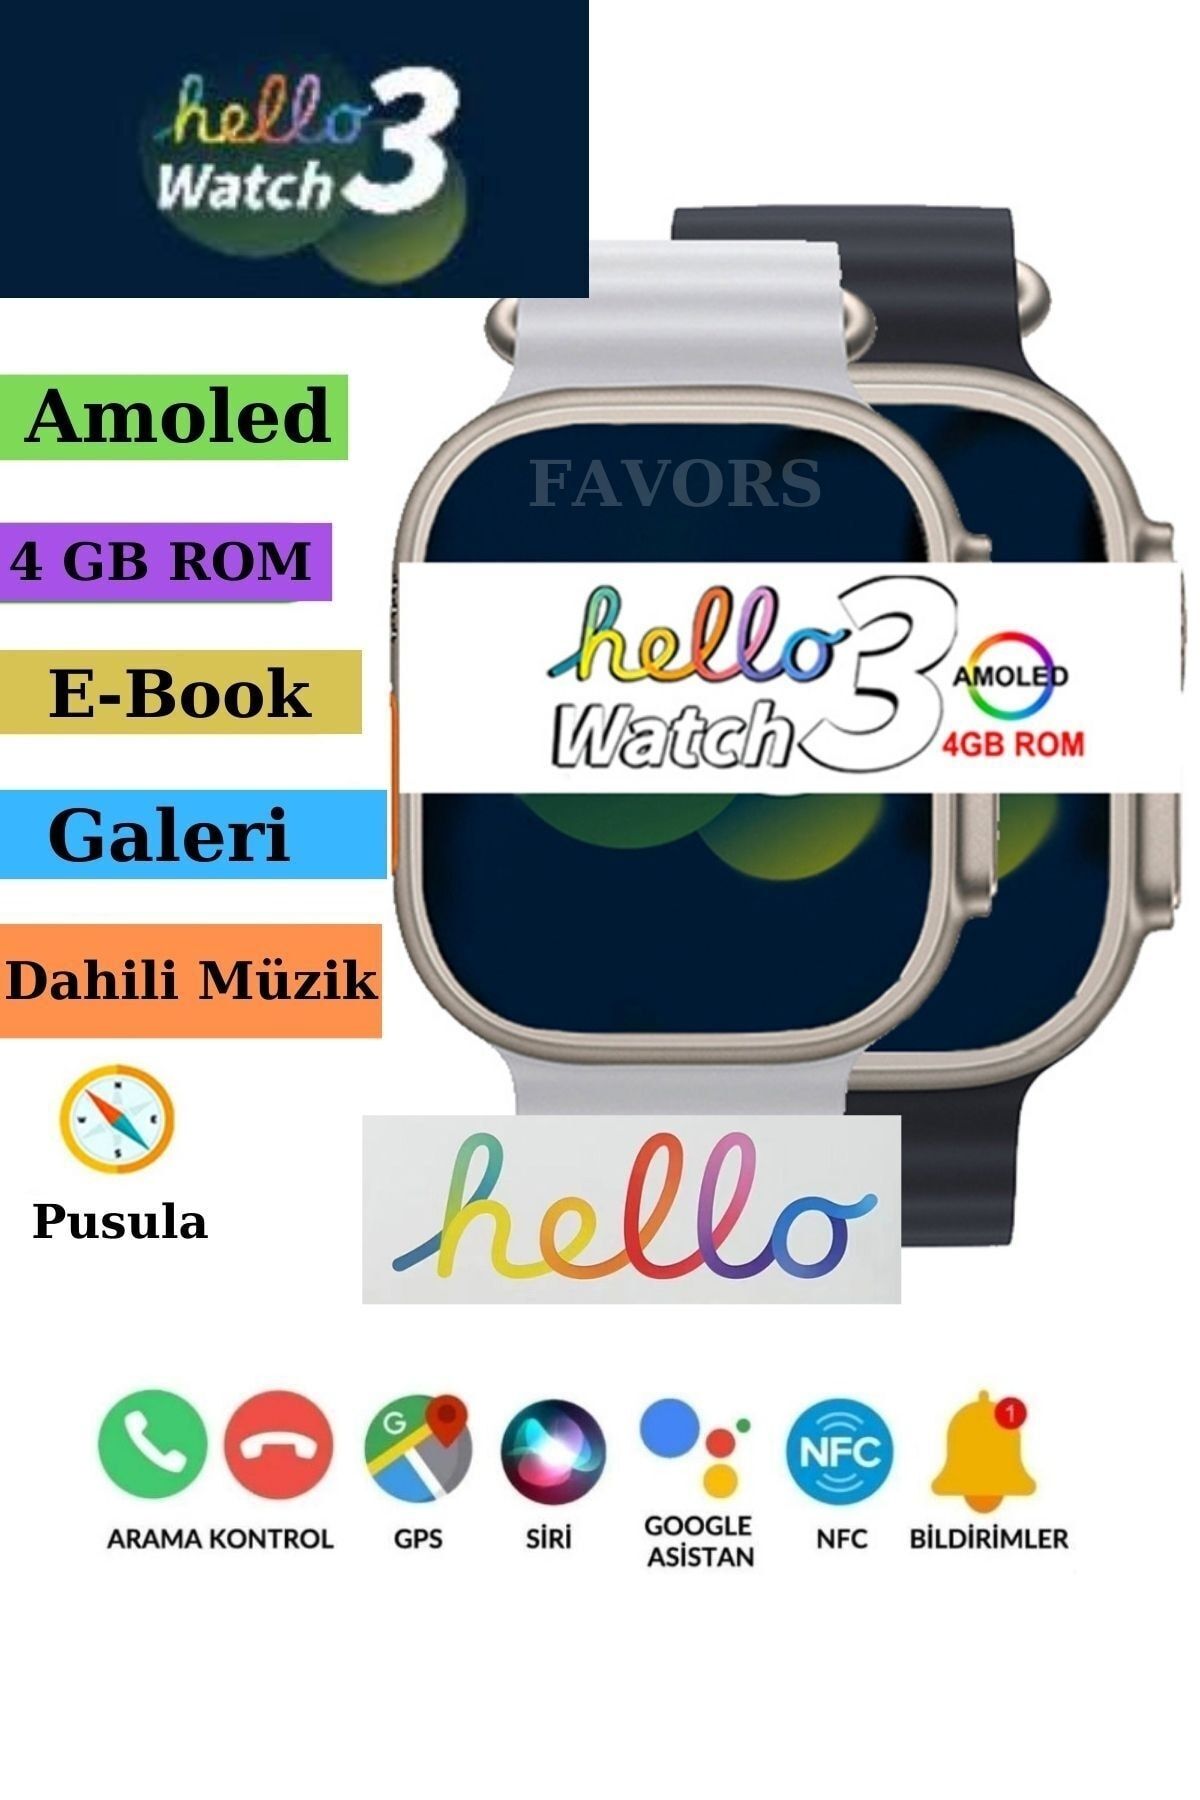 Favors Hello Watch 3 Amoled Ekran Watch 8 Ultra Pusula Galeri 4GB Sağlık Ölçümleri Spor Modları Akıllı Saat